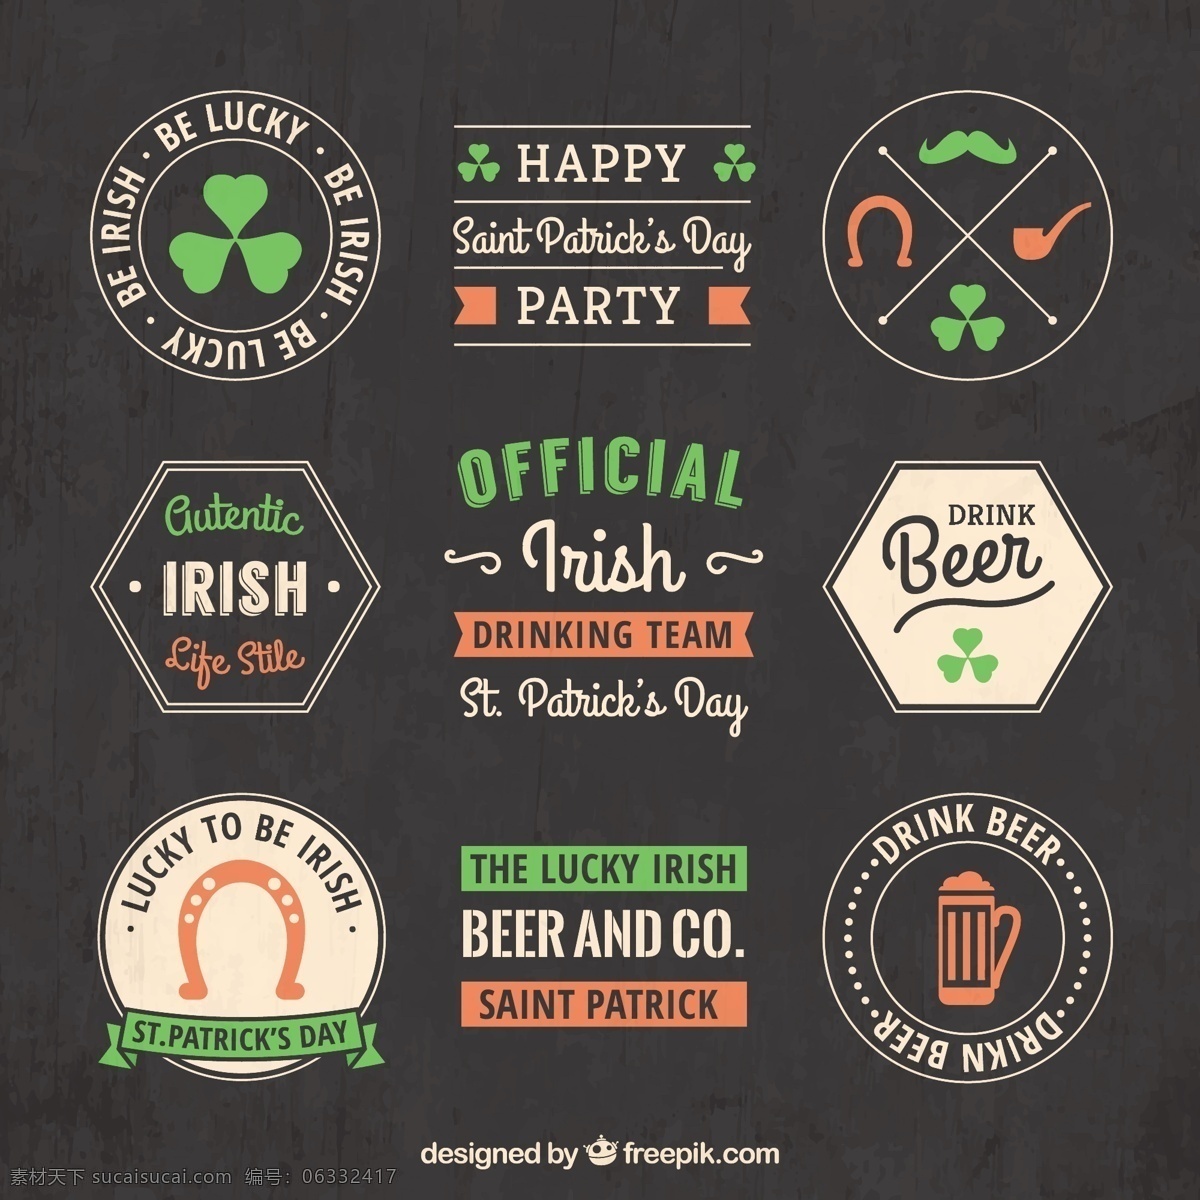 黑板 式 圣帕特里克 徽章 标签 党 啤酒 庆典 节日 圣帕特里克日 庆祝 酒吧的风格 爱尔兰人 一天 爱尔兰 帕特里克 灰色